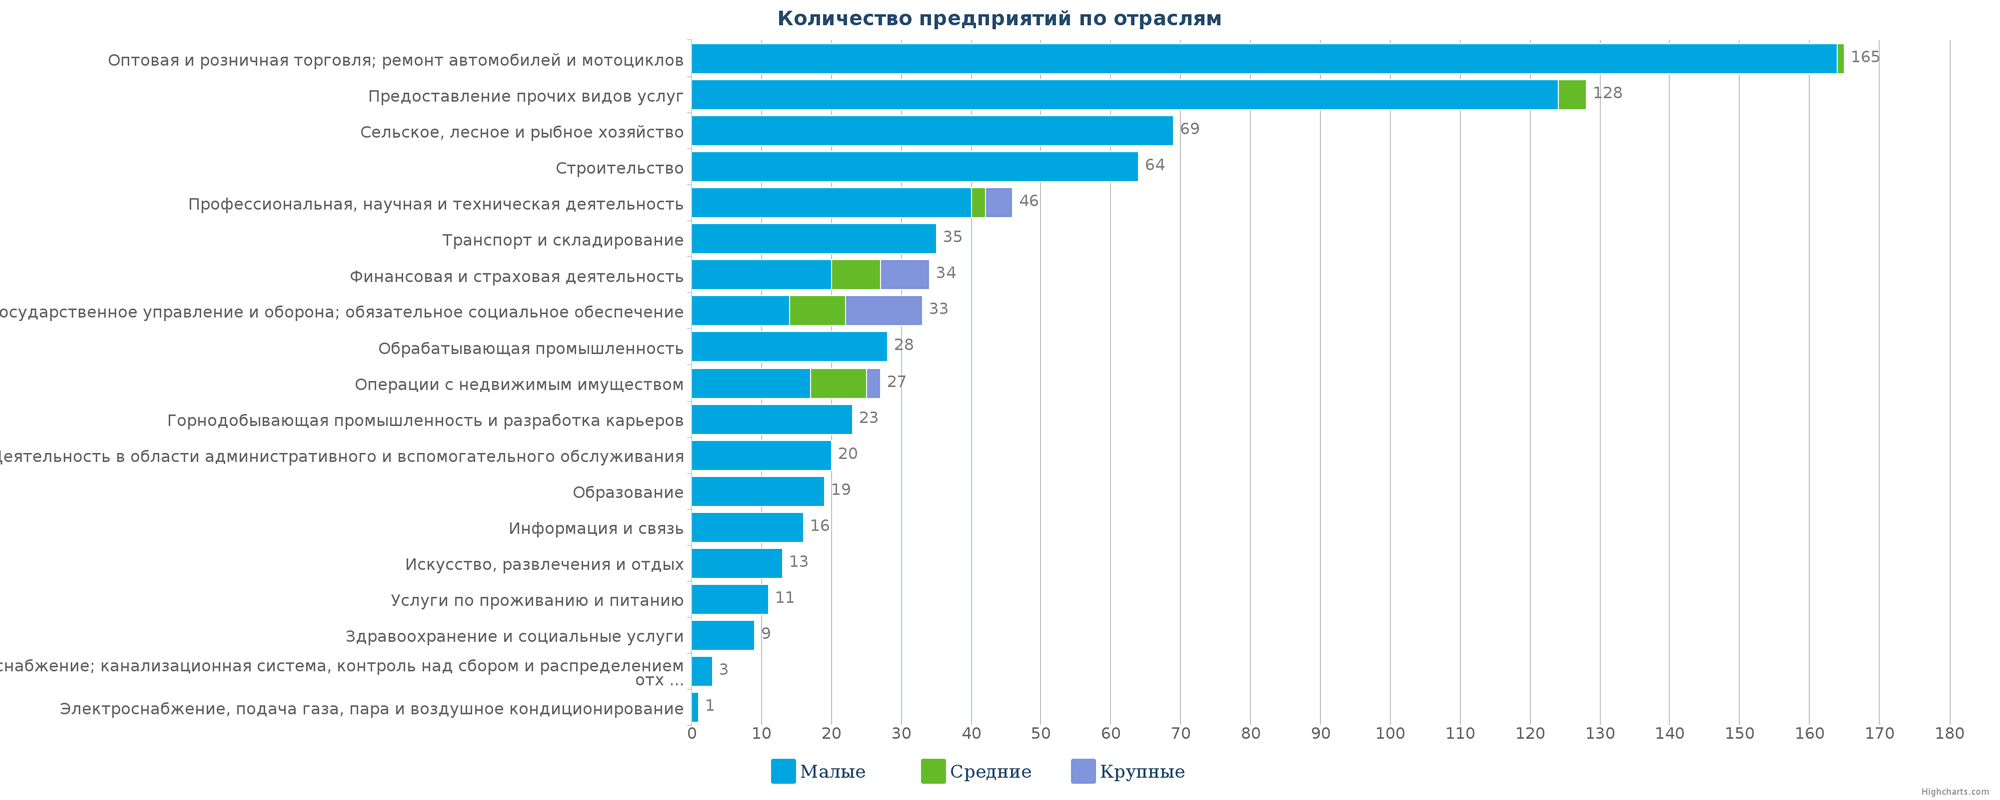 Новые компании в государственном реестре Казахстана